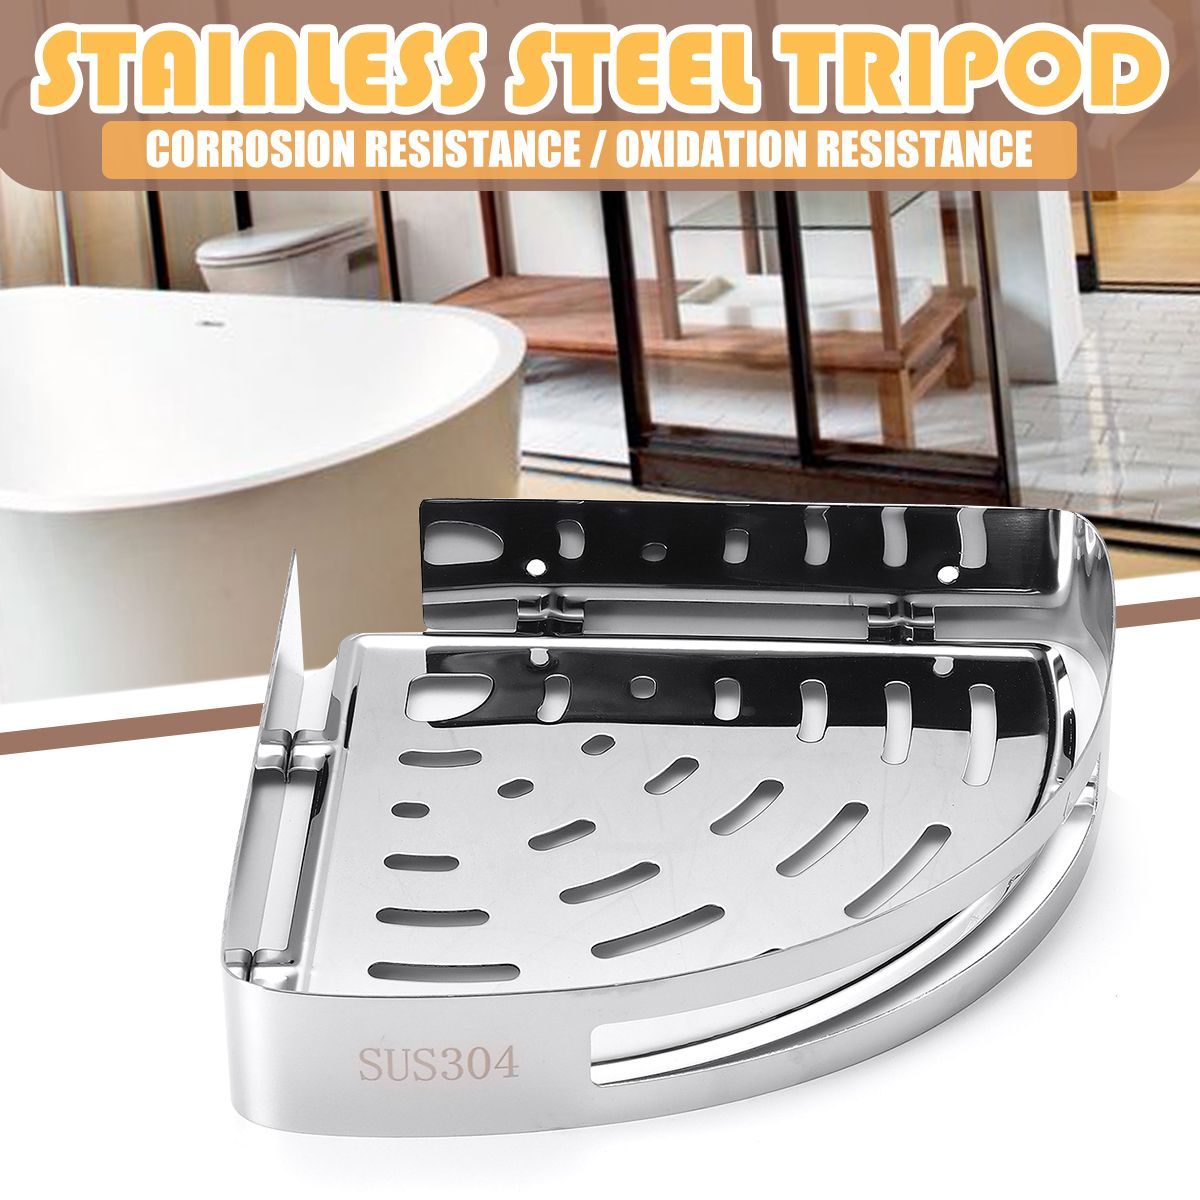 KitchenBathroom-Stainless-Steel-Triangular-Rack-Shower-Caddy-Storage-Holder-Shelf-1602525